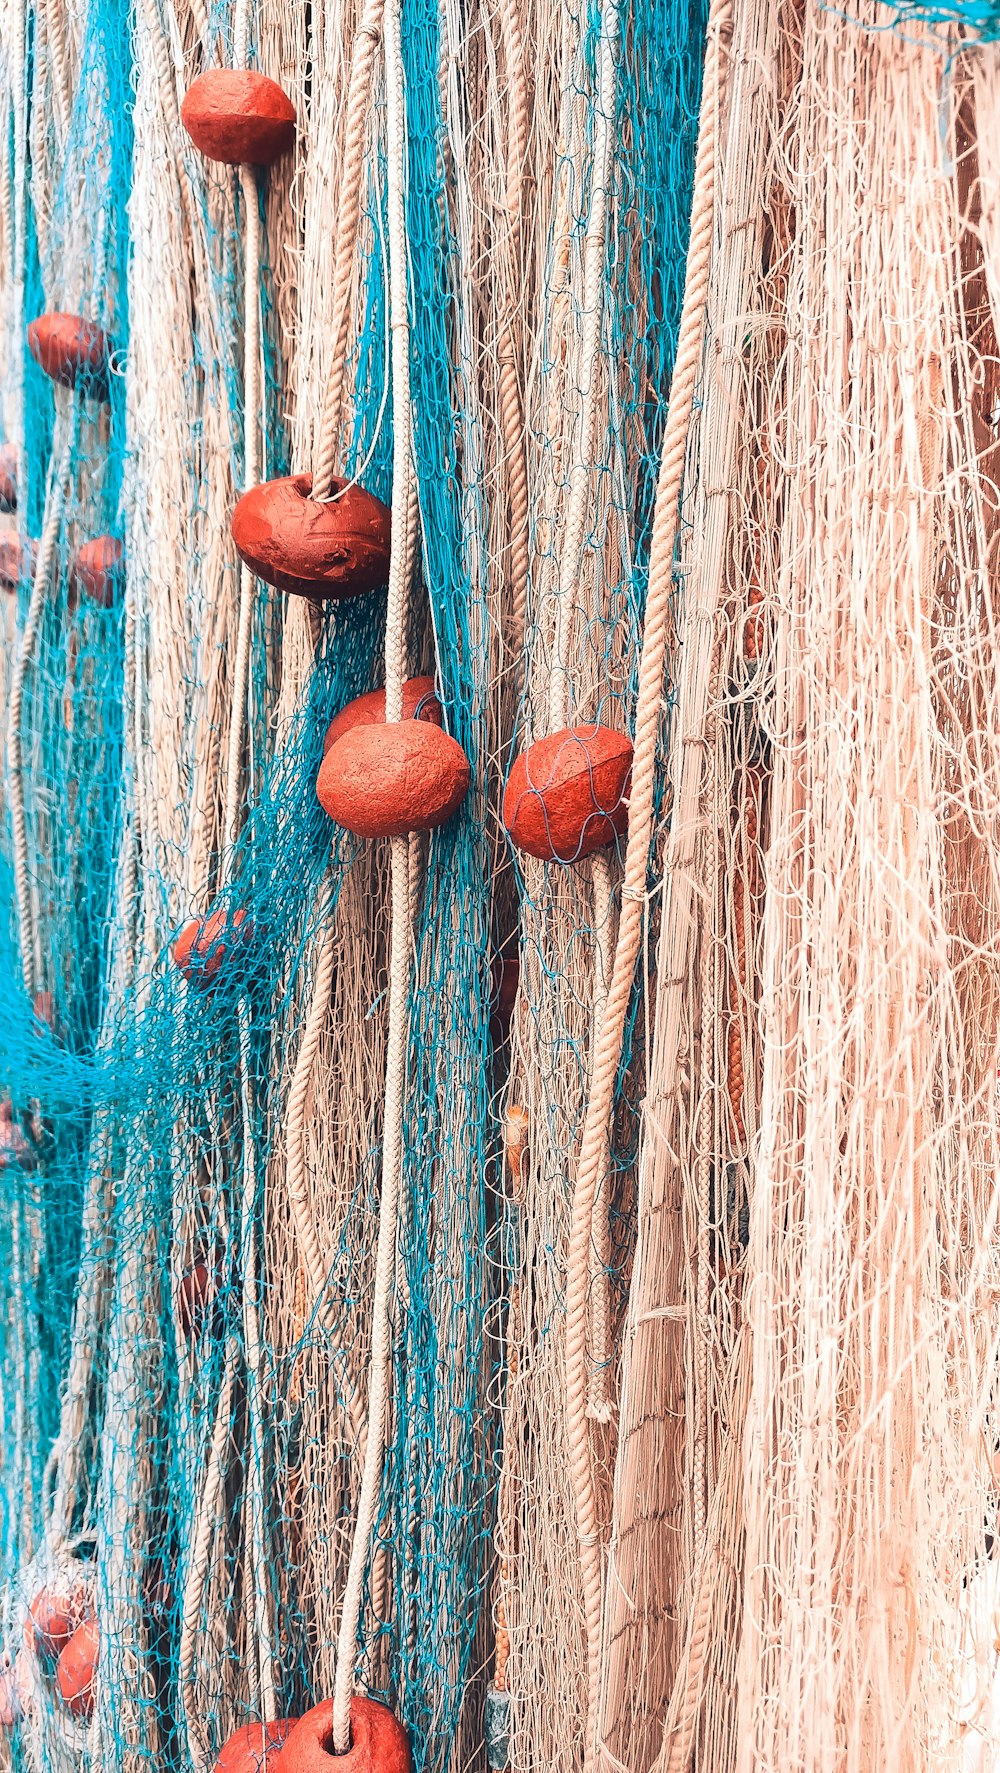 茶色の木の棒に茶色と青のロープ